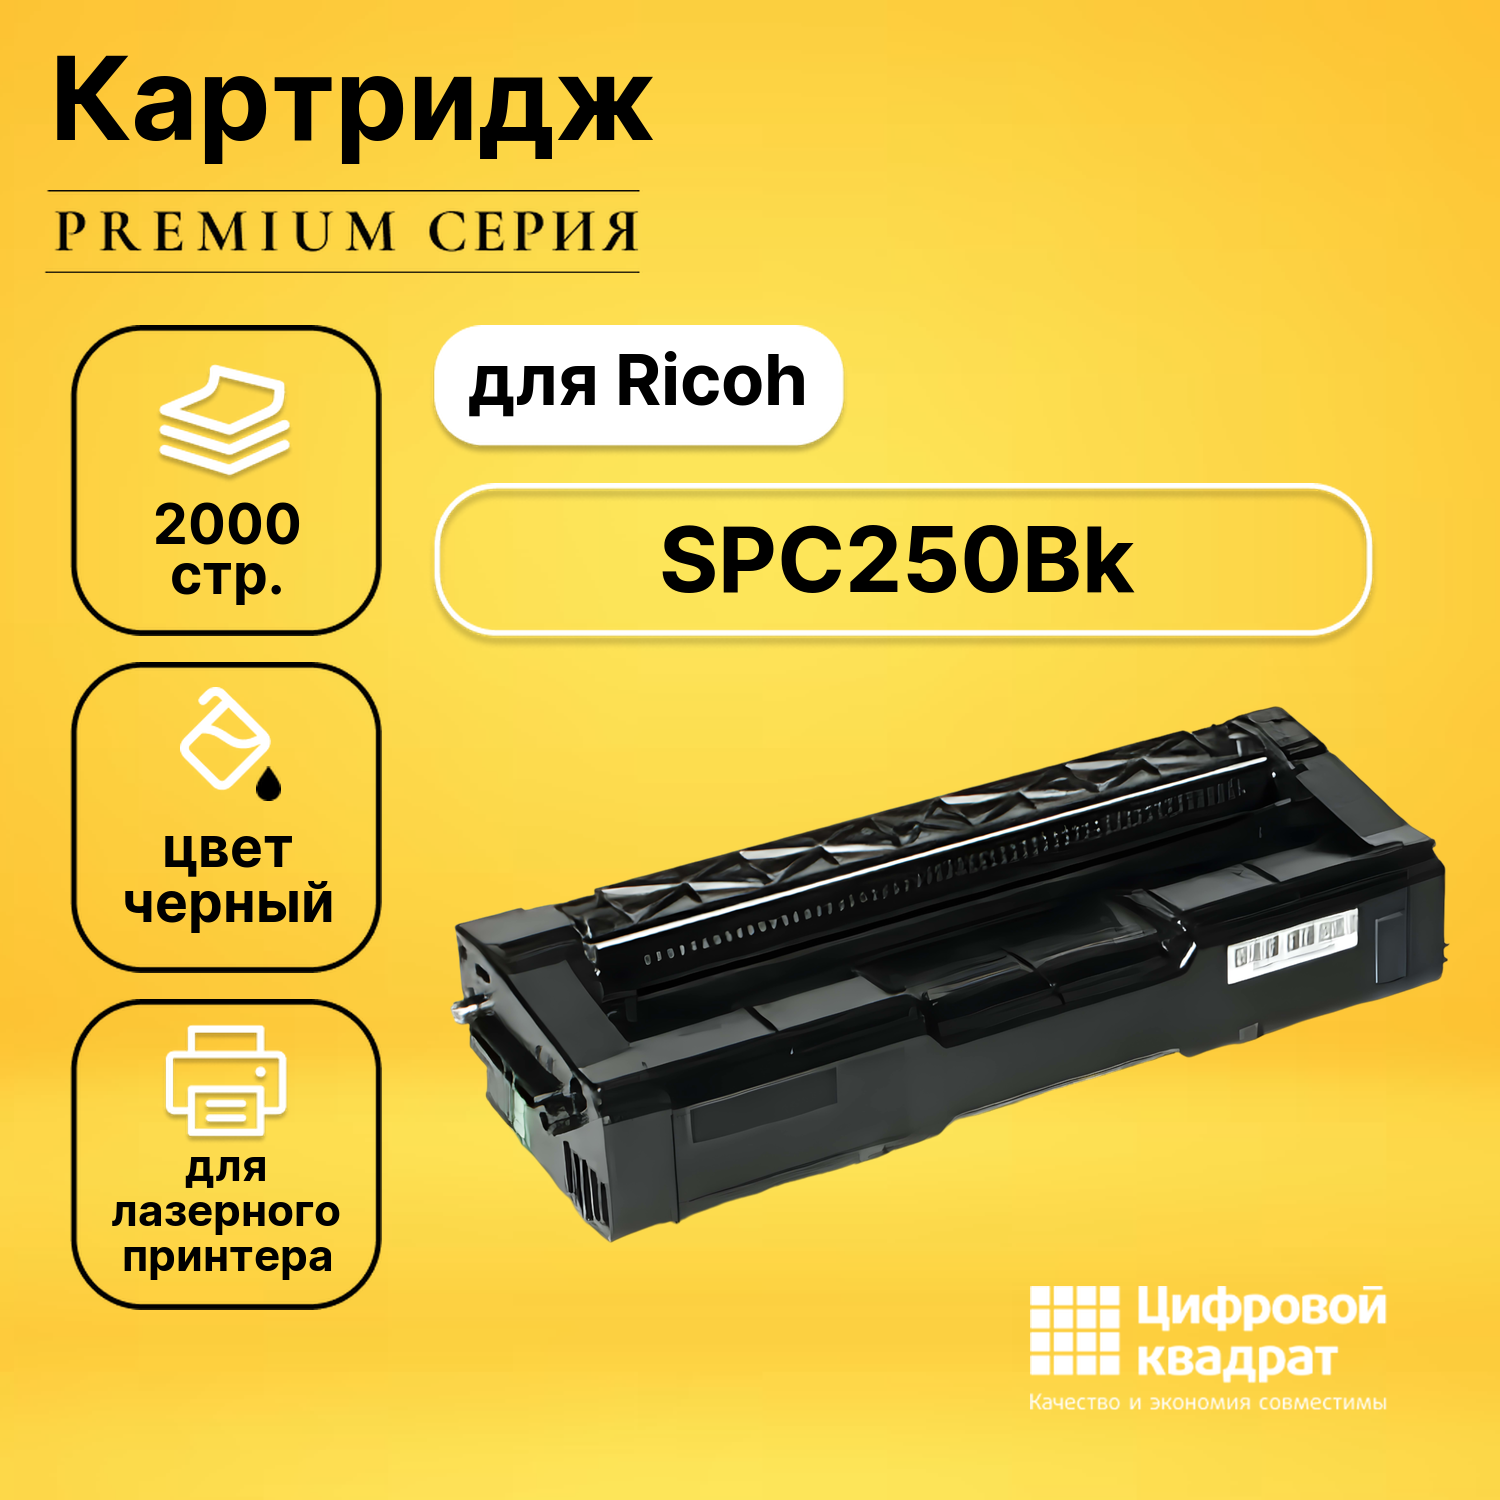 Картридж DS SPC250Bk Ricoh 407543 черный совместимый